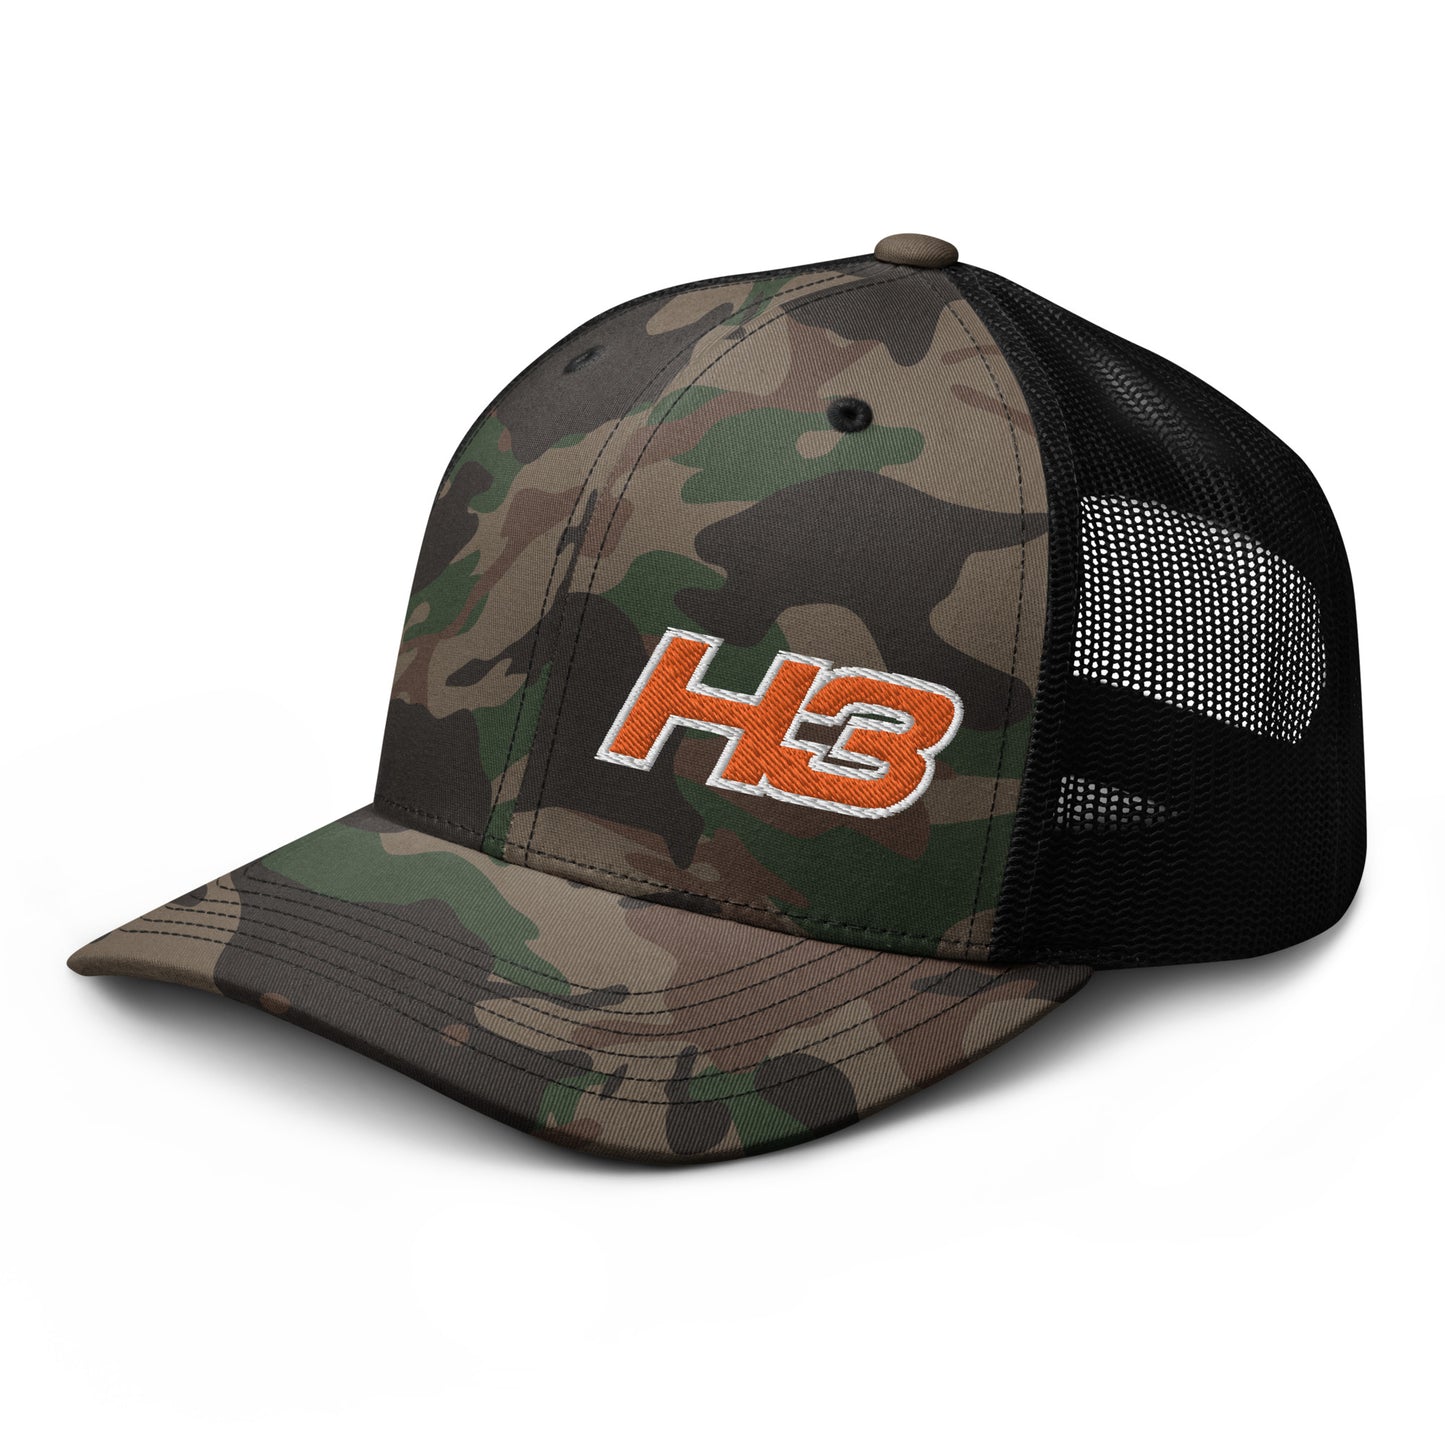 HertLife - H3 Camo Trucker Hat